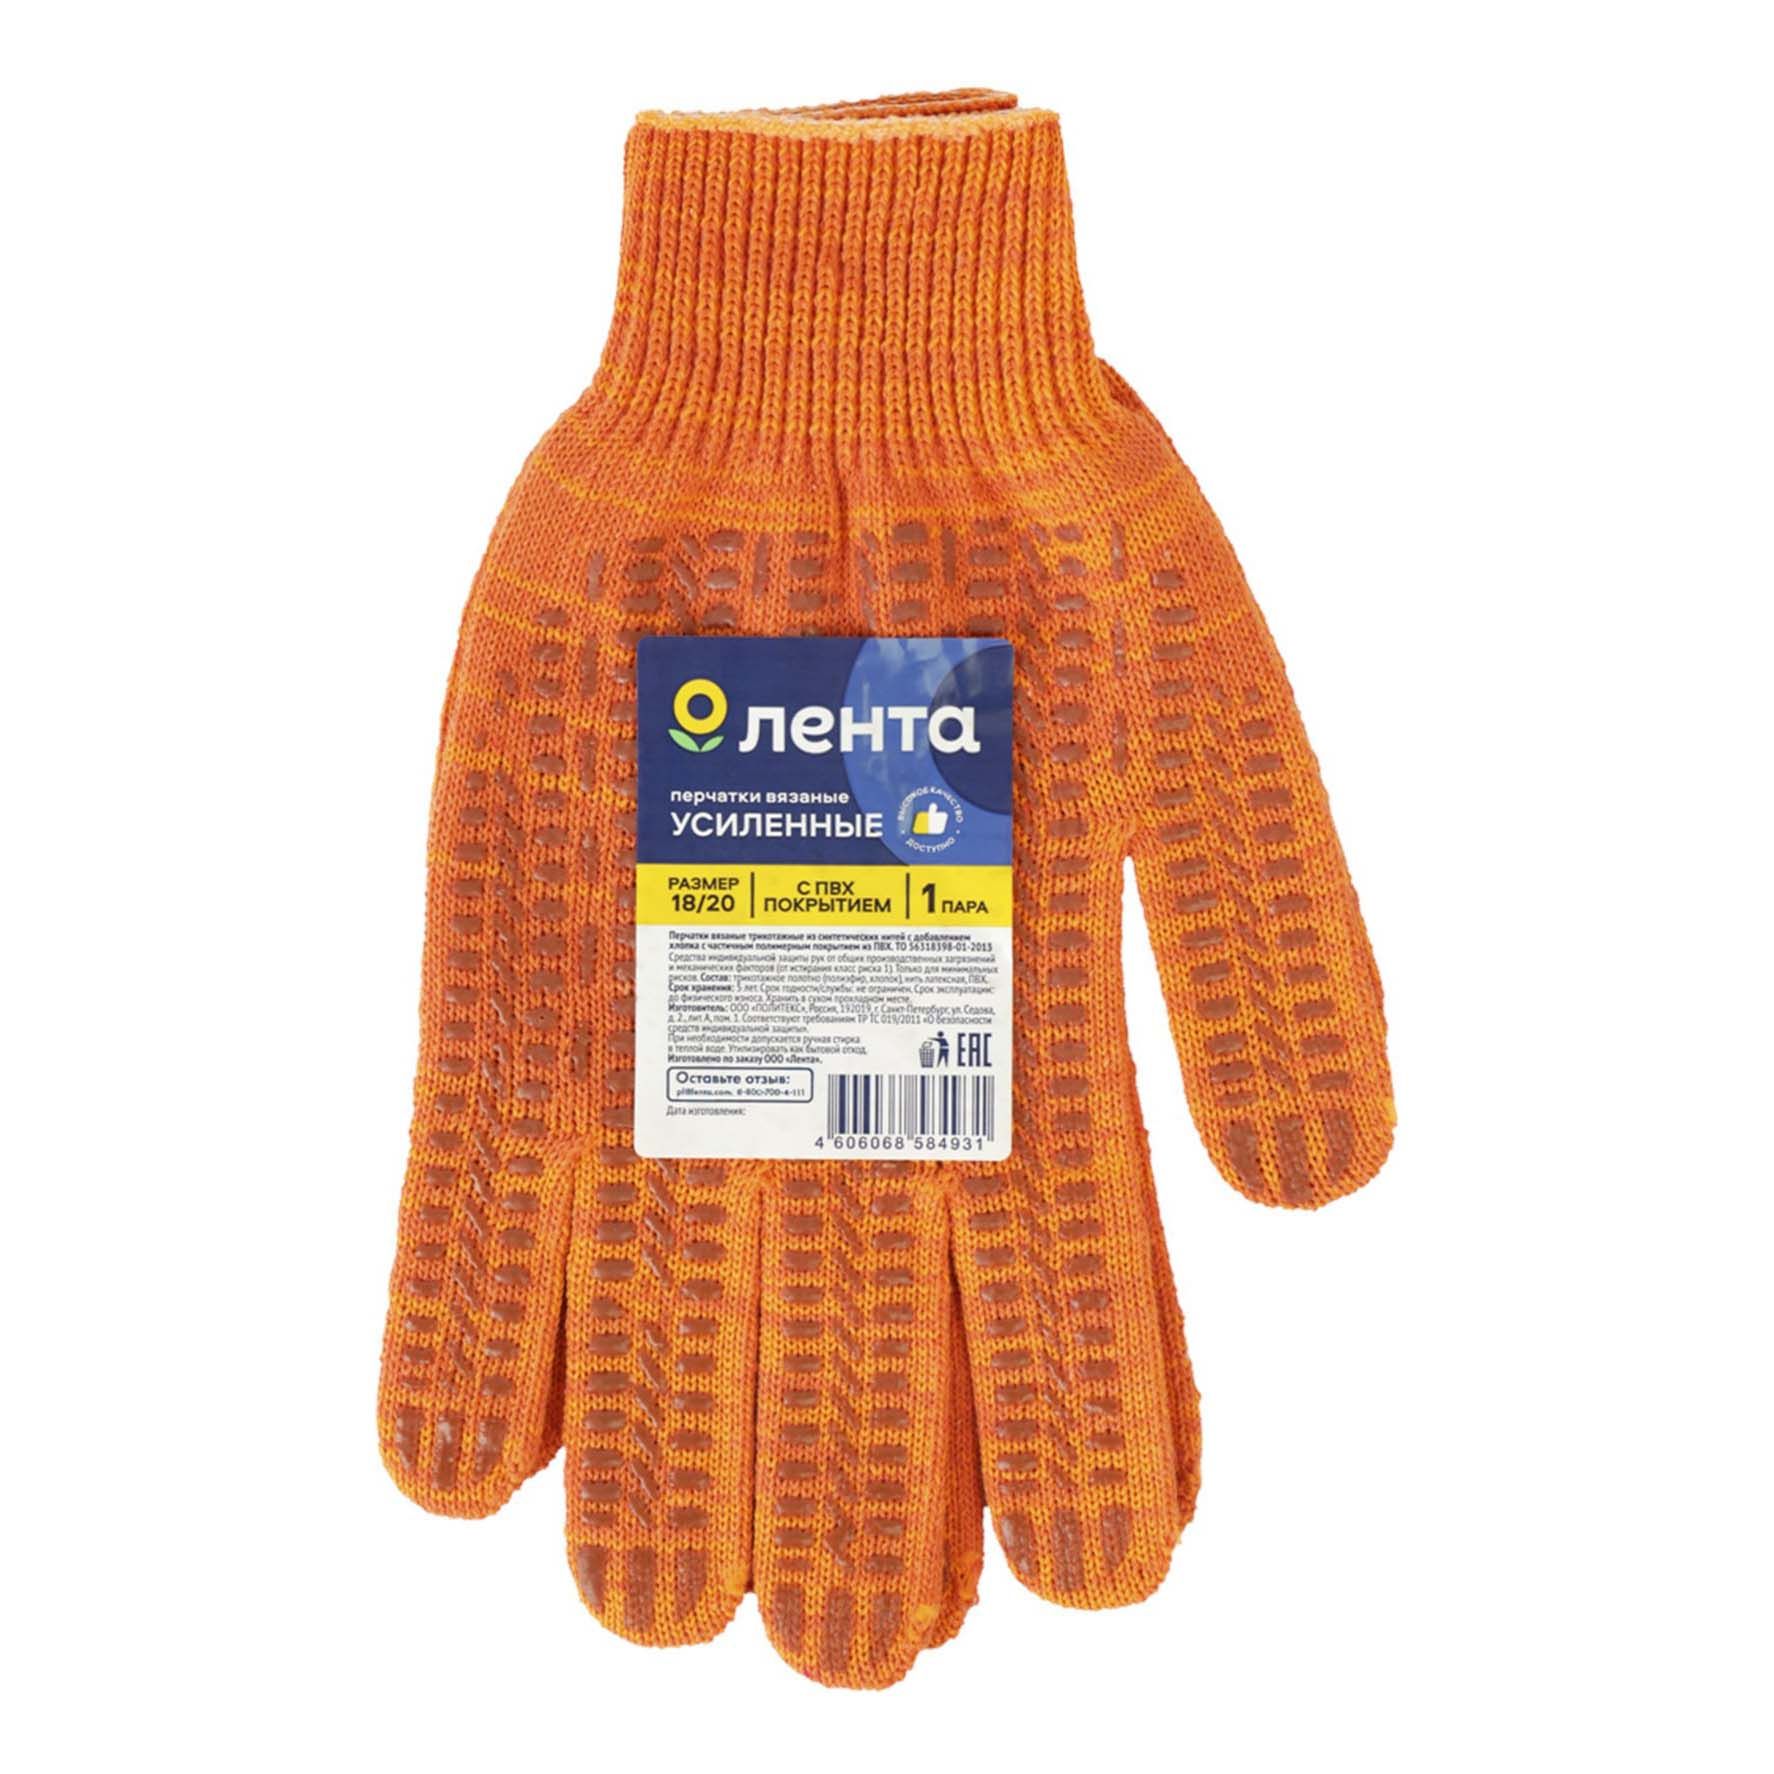 Перчатки Лента вязаные усиленные с двухсторонним ПВХ покрытием 5-нитевые р 18-20 оранжевые